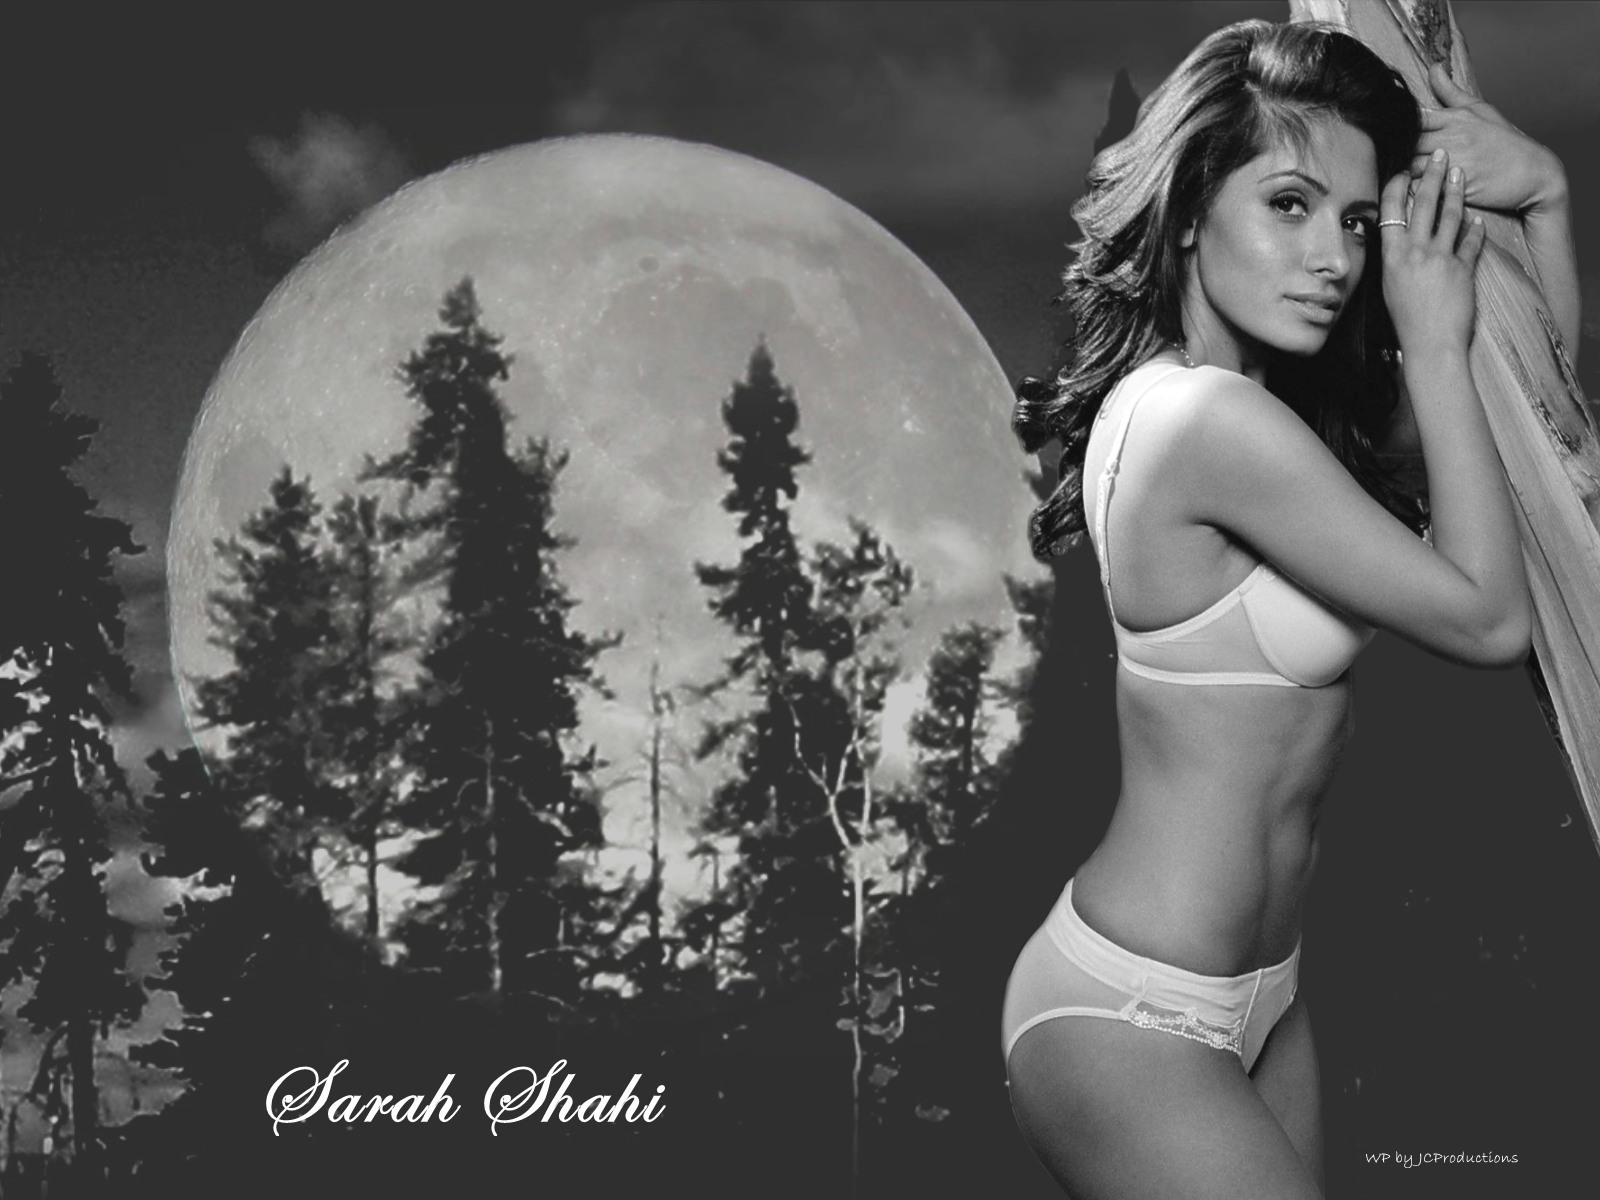 Sarah shahi sexy pic